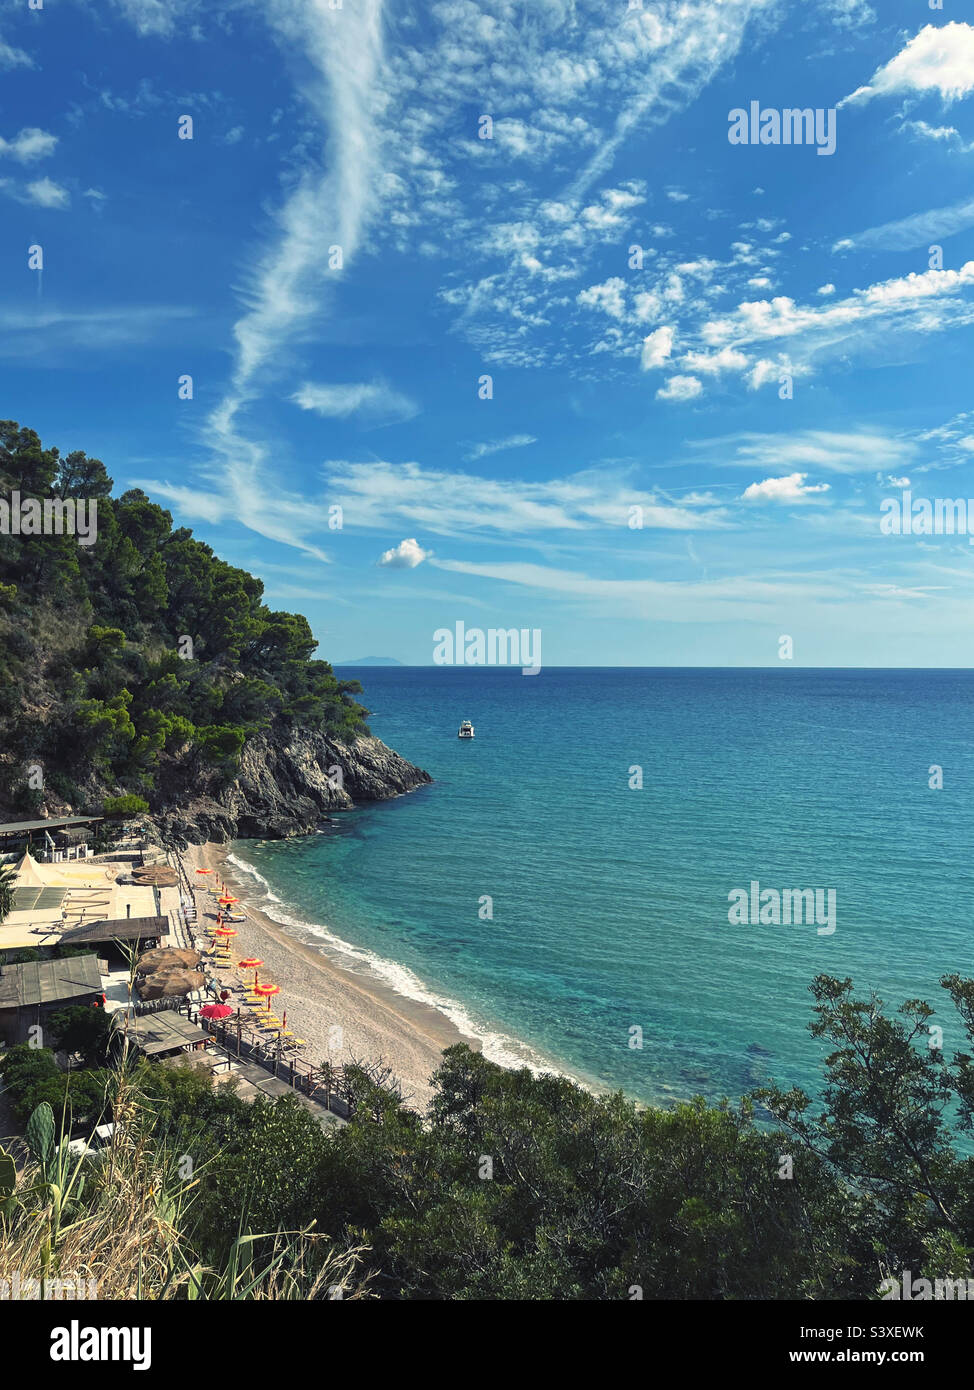 View of Spiaggia delle Bambole, Sperlonga, Italy. Stock Photo